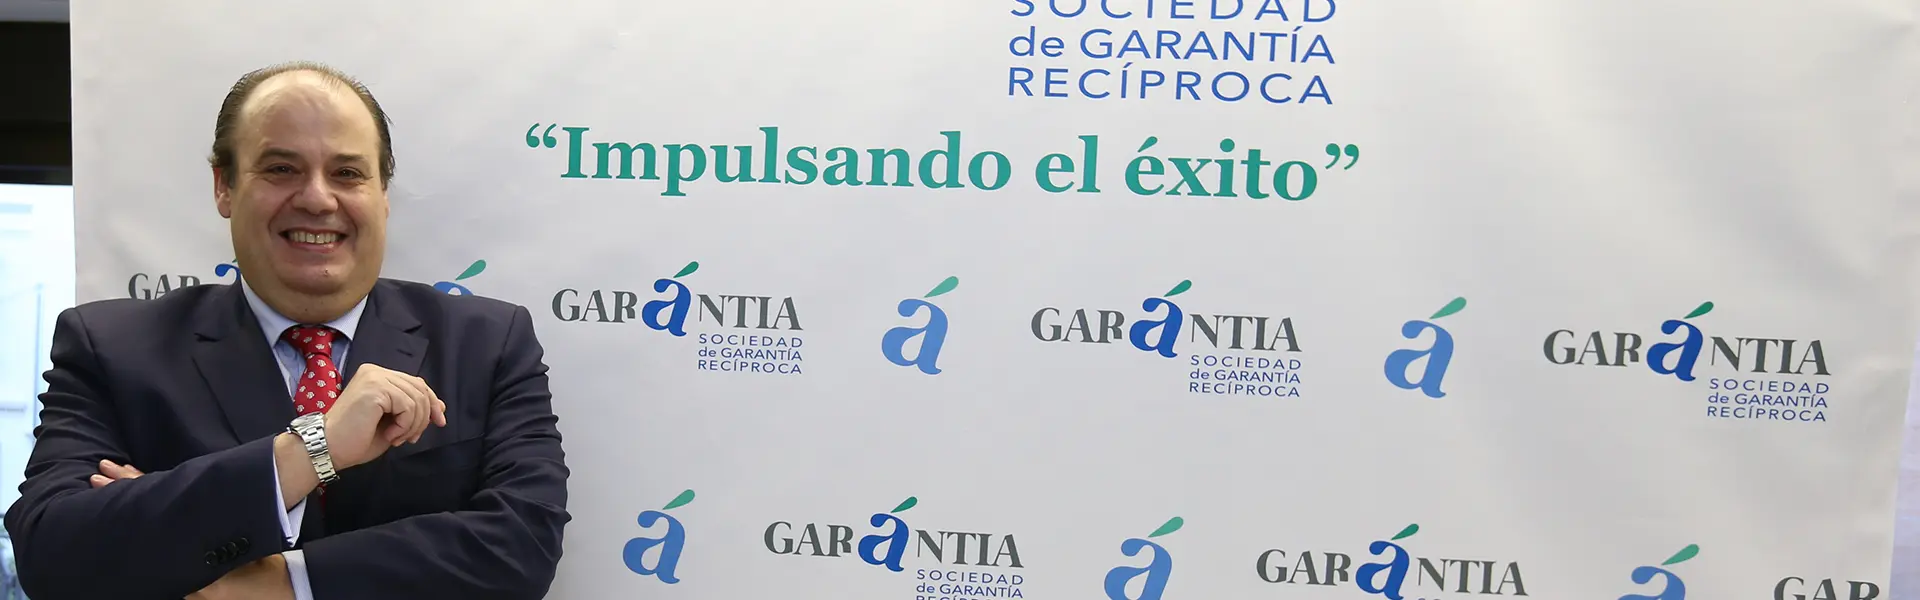 Garantia un instrumento eficiente al servicio de la recuperacion economica en Andalucia Hemeroteca Cesgar web